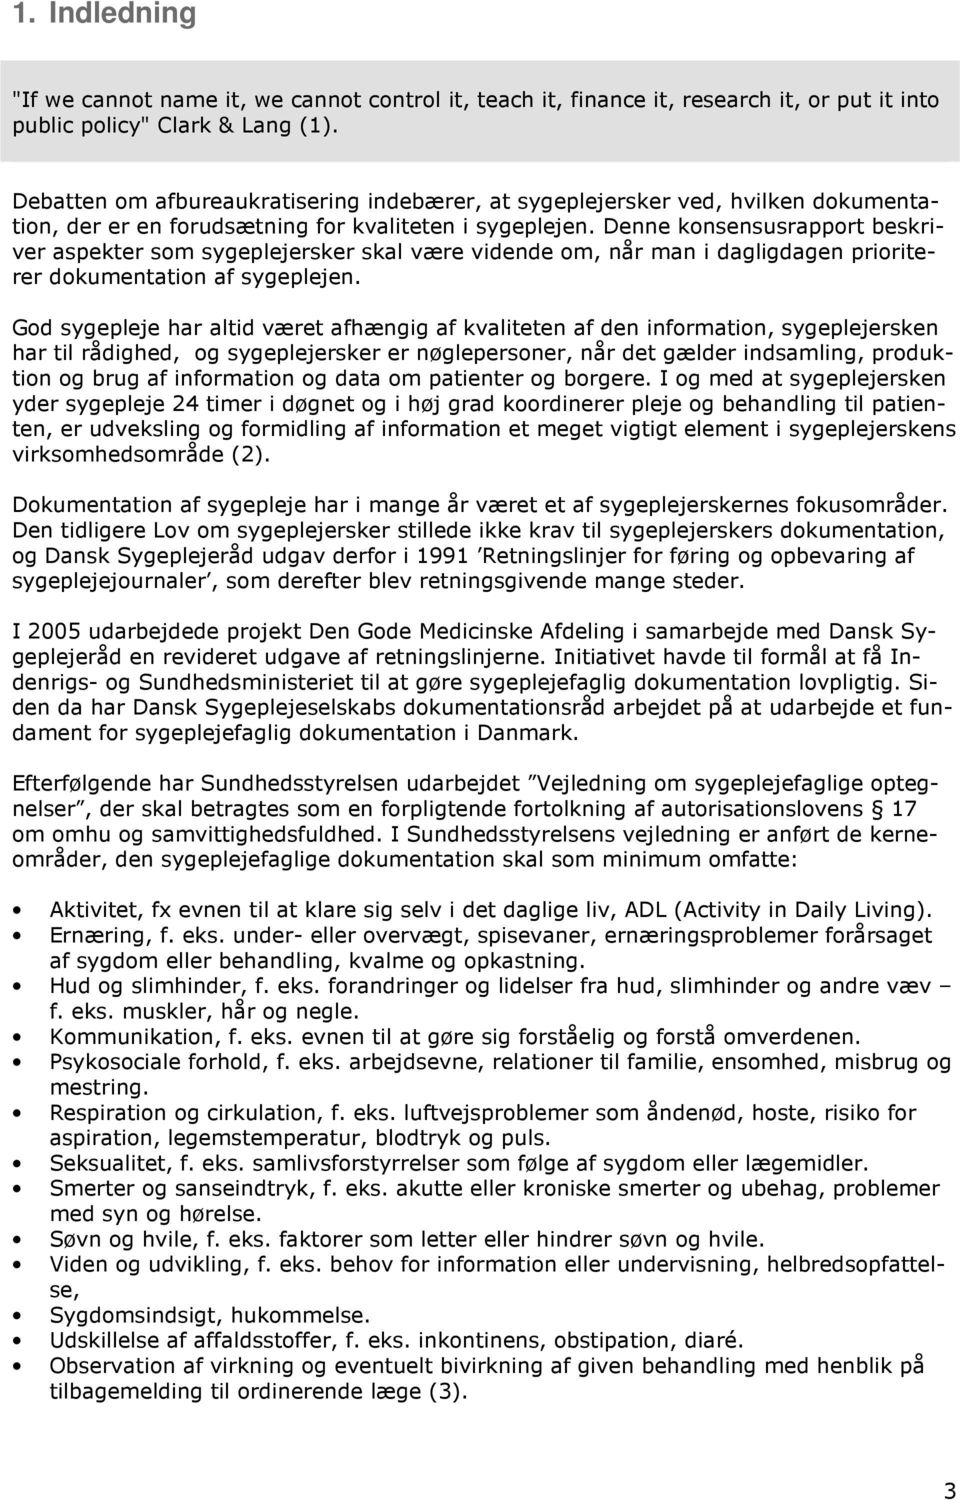 DOKUMENTATION AF SYGEPLEJE - KONSENSUSRAPPORT - PDF Free Download